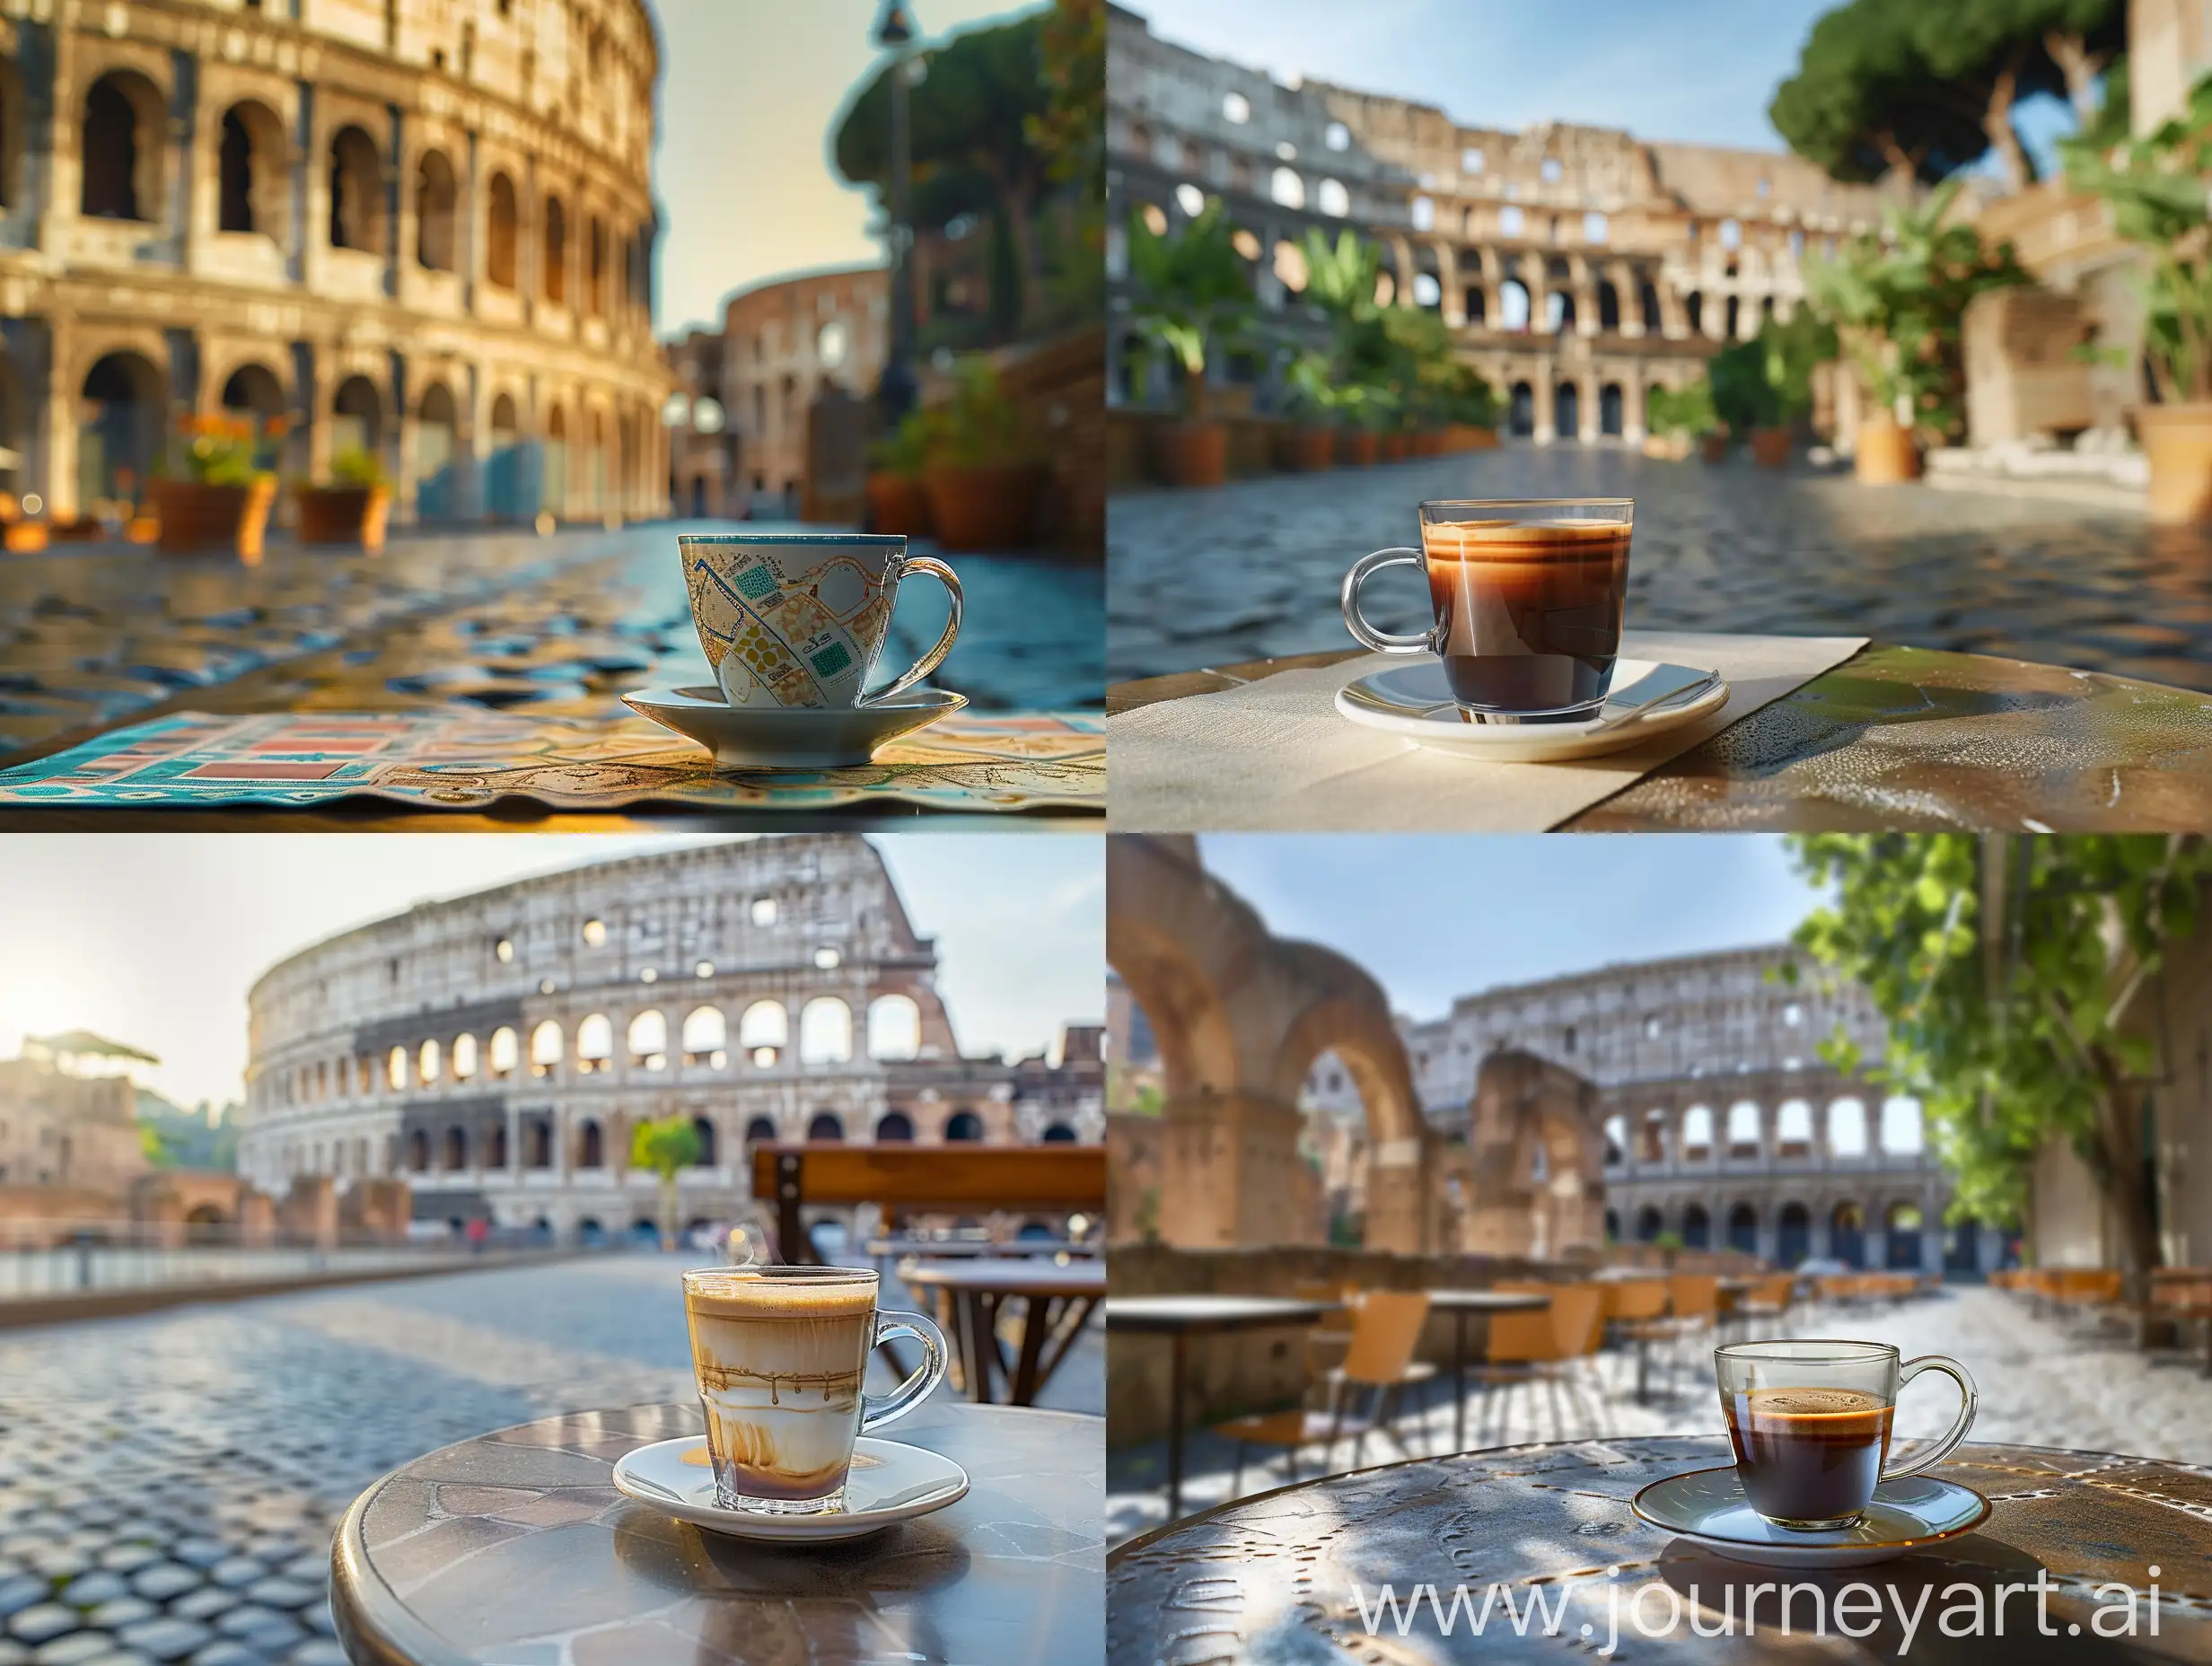 Рекламная фотография стеклянная чашка кофе на столике в кофейне на фоне Колизея в Италии, вид спереди, студийная съемка с помощью цифровой зеркальной камеры Canon и микрообъектива IF-ED VR 105 мм f/2,8G, фотореалистичная, снимок с земли, естественное освещение, глубина резкости, макросъемка пейзажа — q 0,5 — s 250